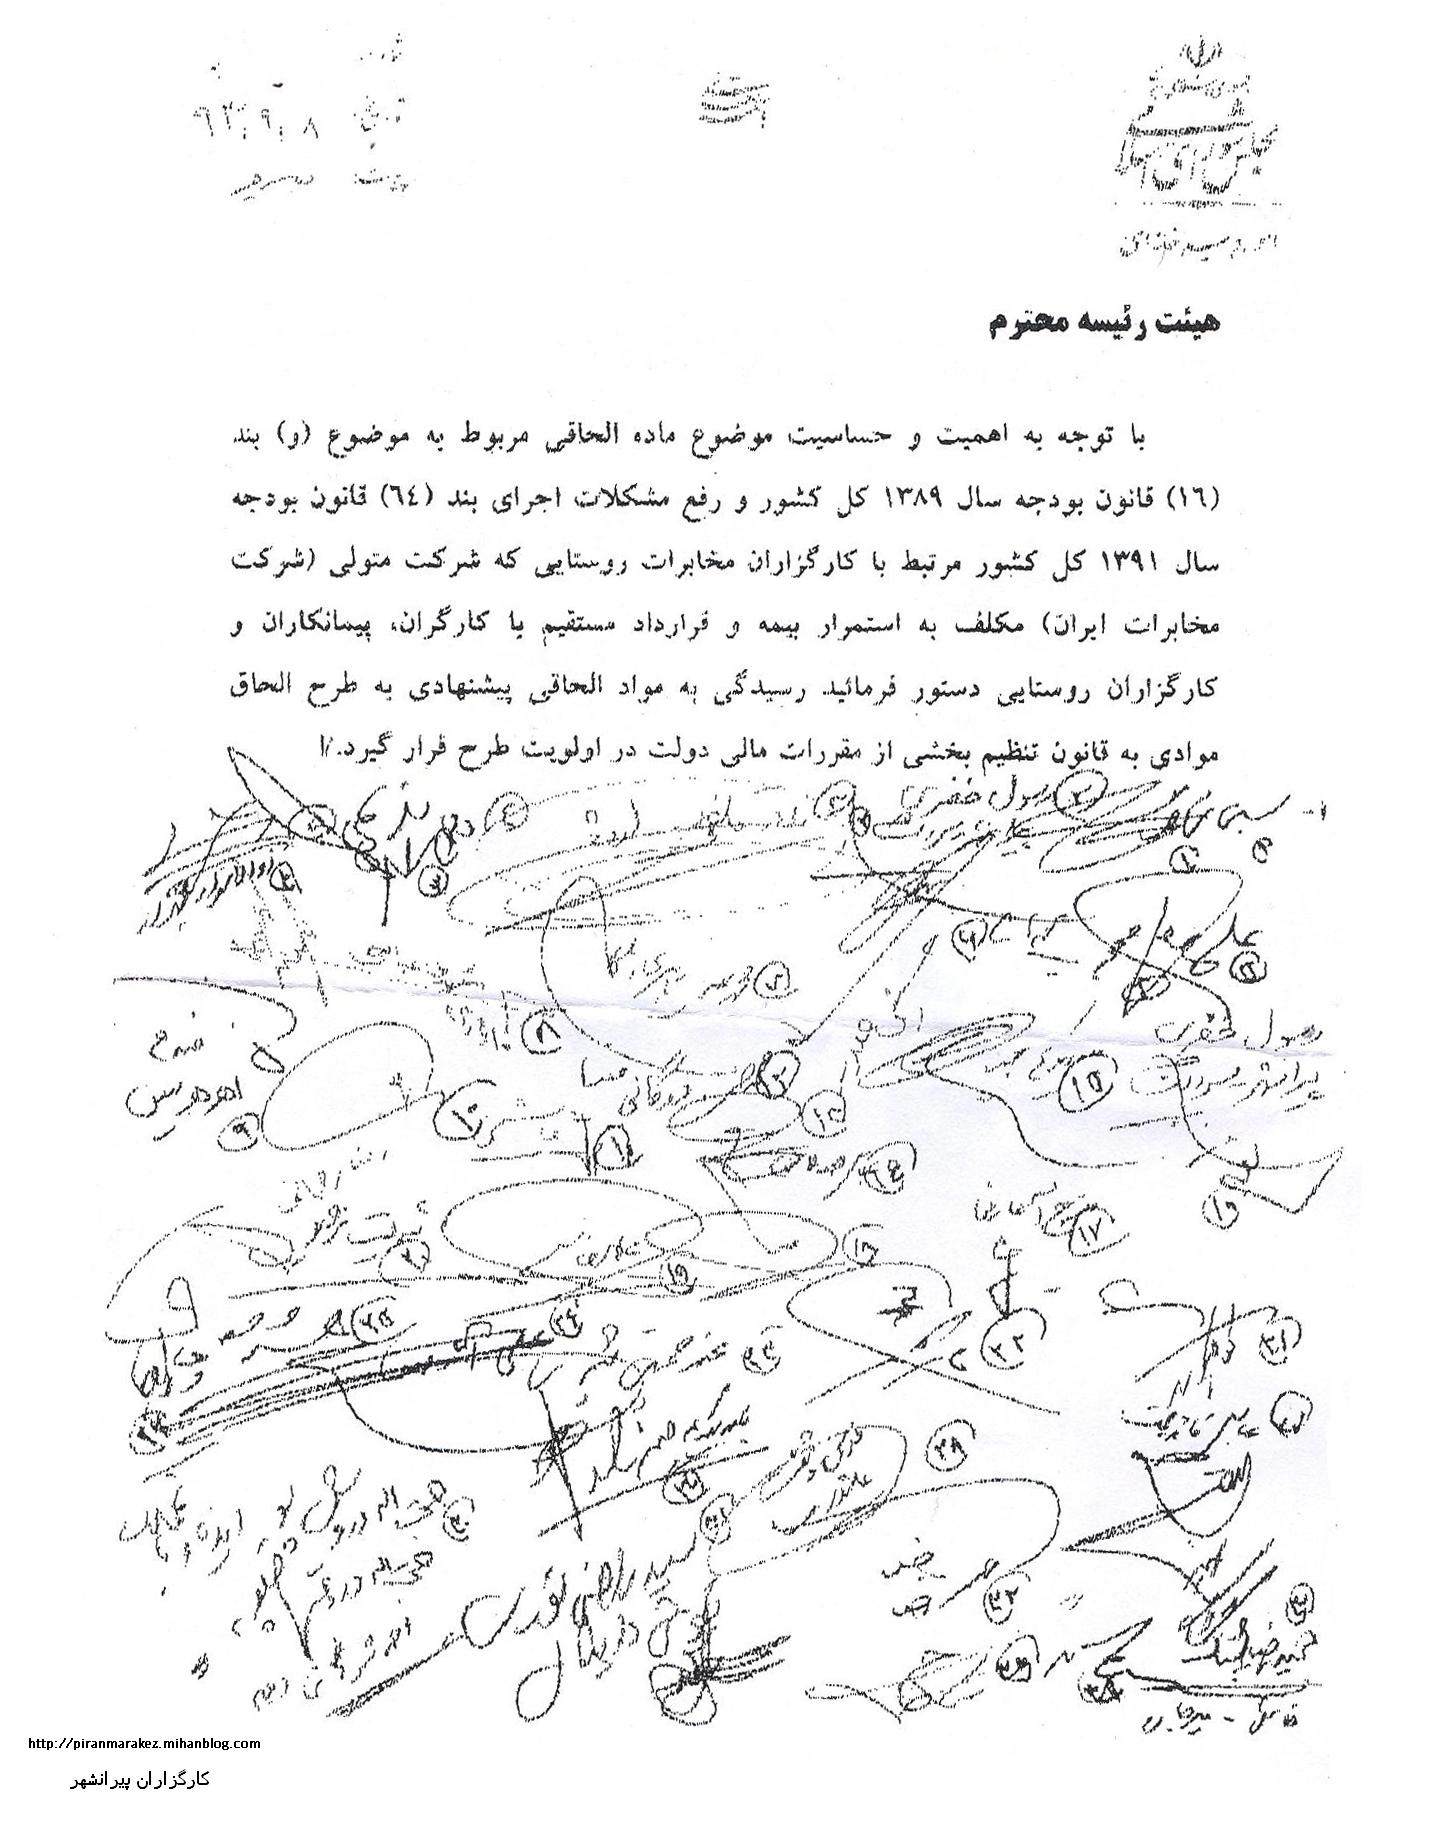 نامه جمعی از نمایندگان به هیئت رئیسه مجلس شورای اسلامی